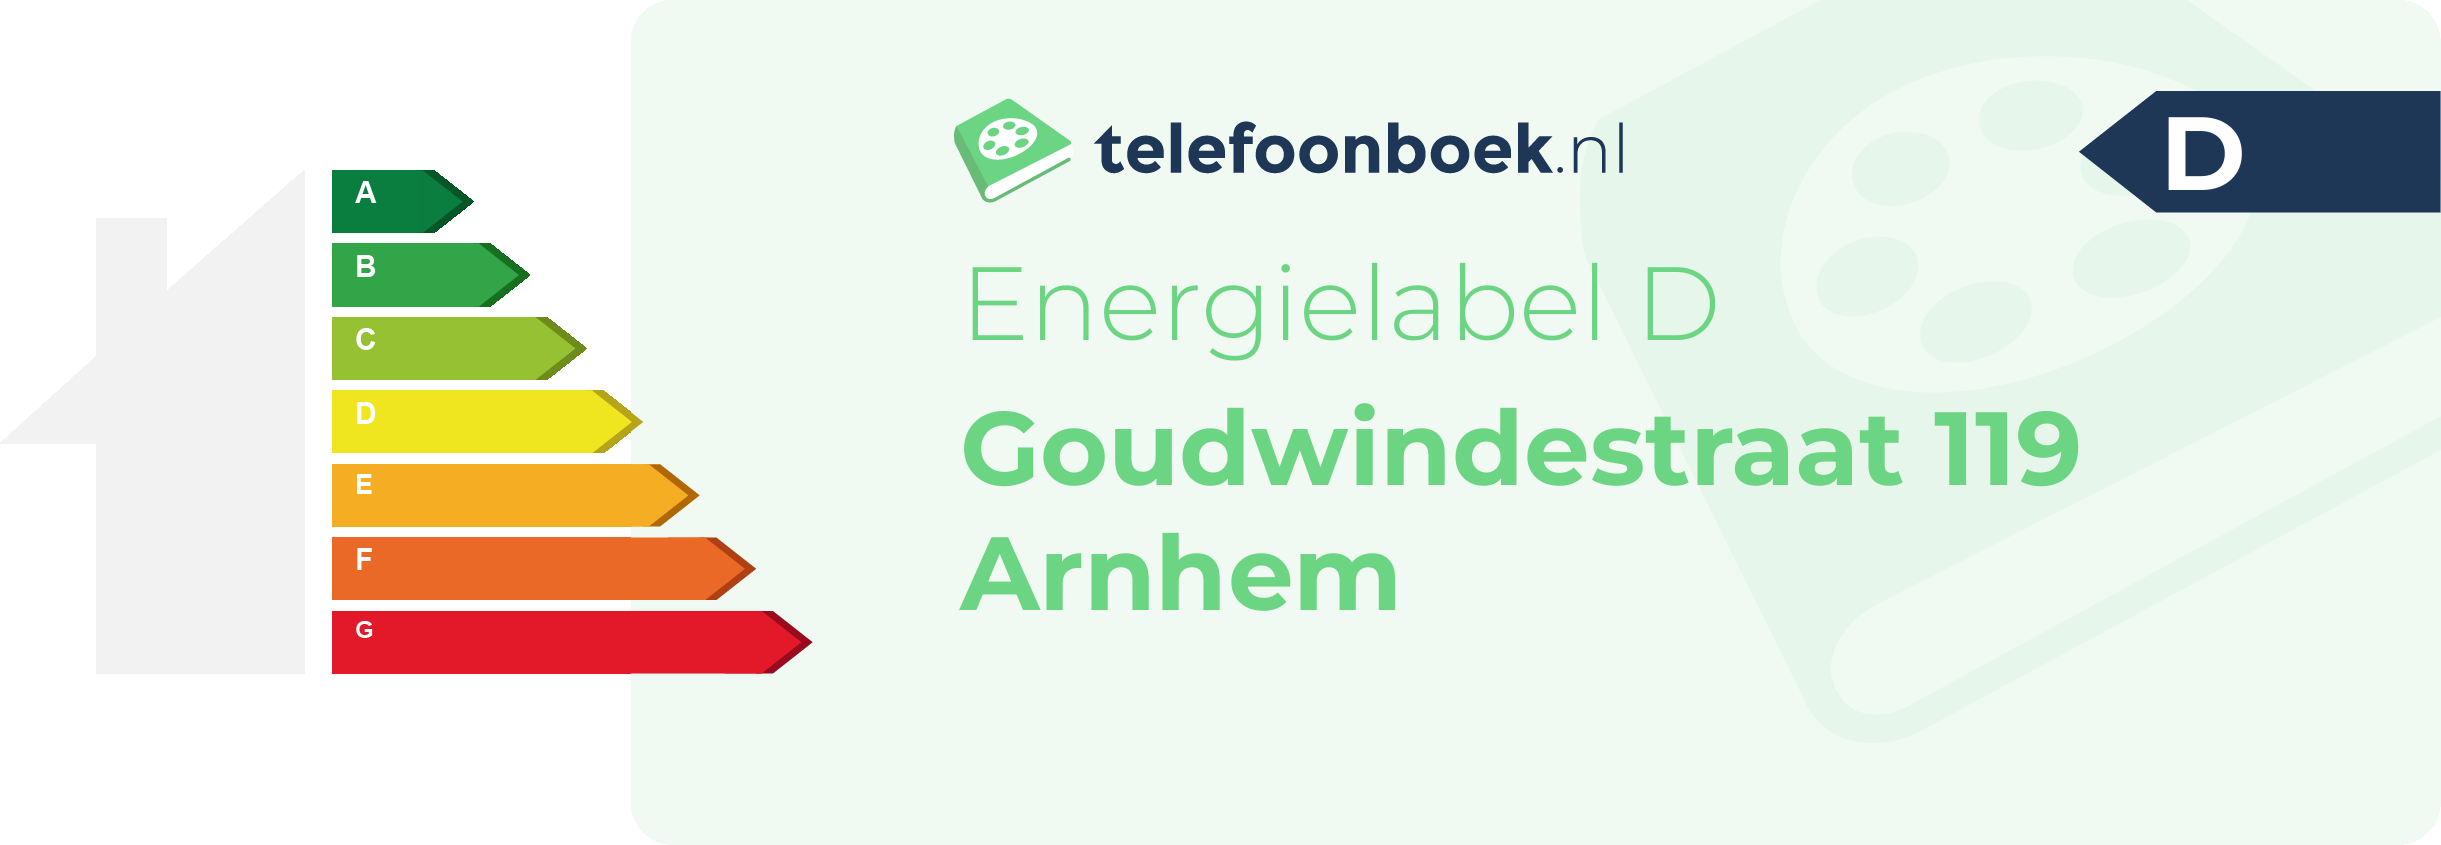 Energielabel Goudwindestraat 119 Arnhem